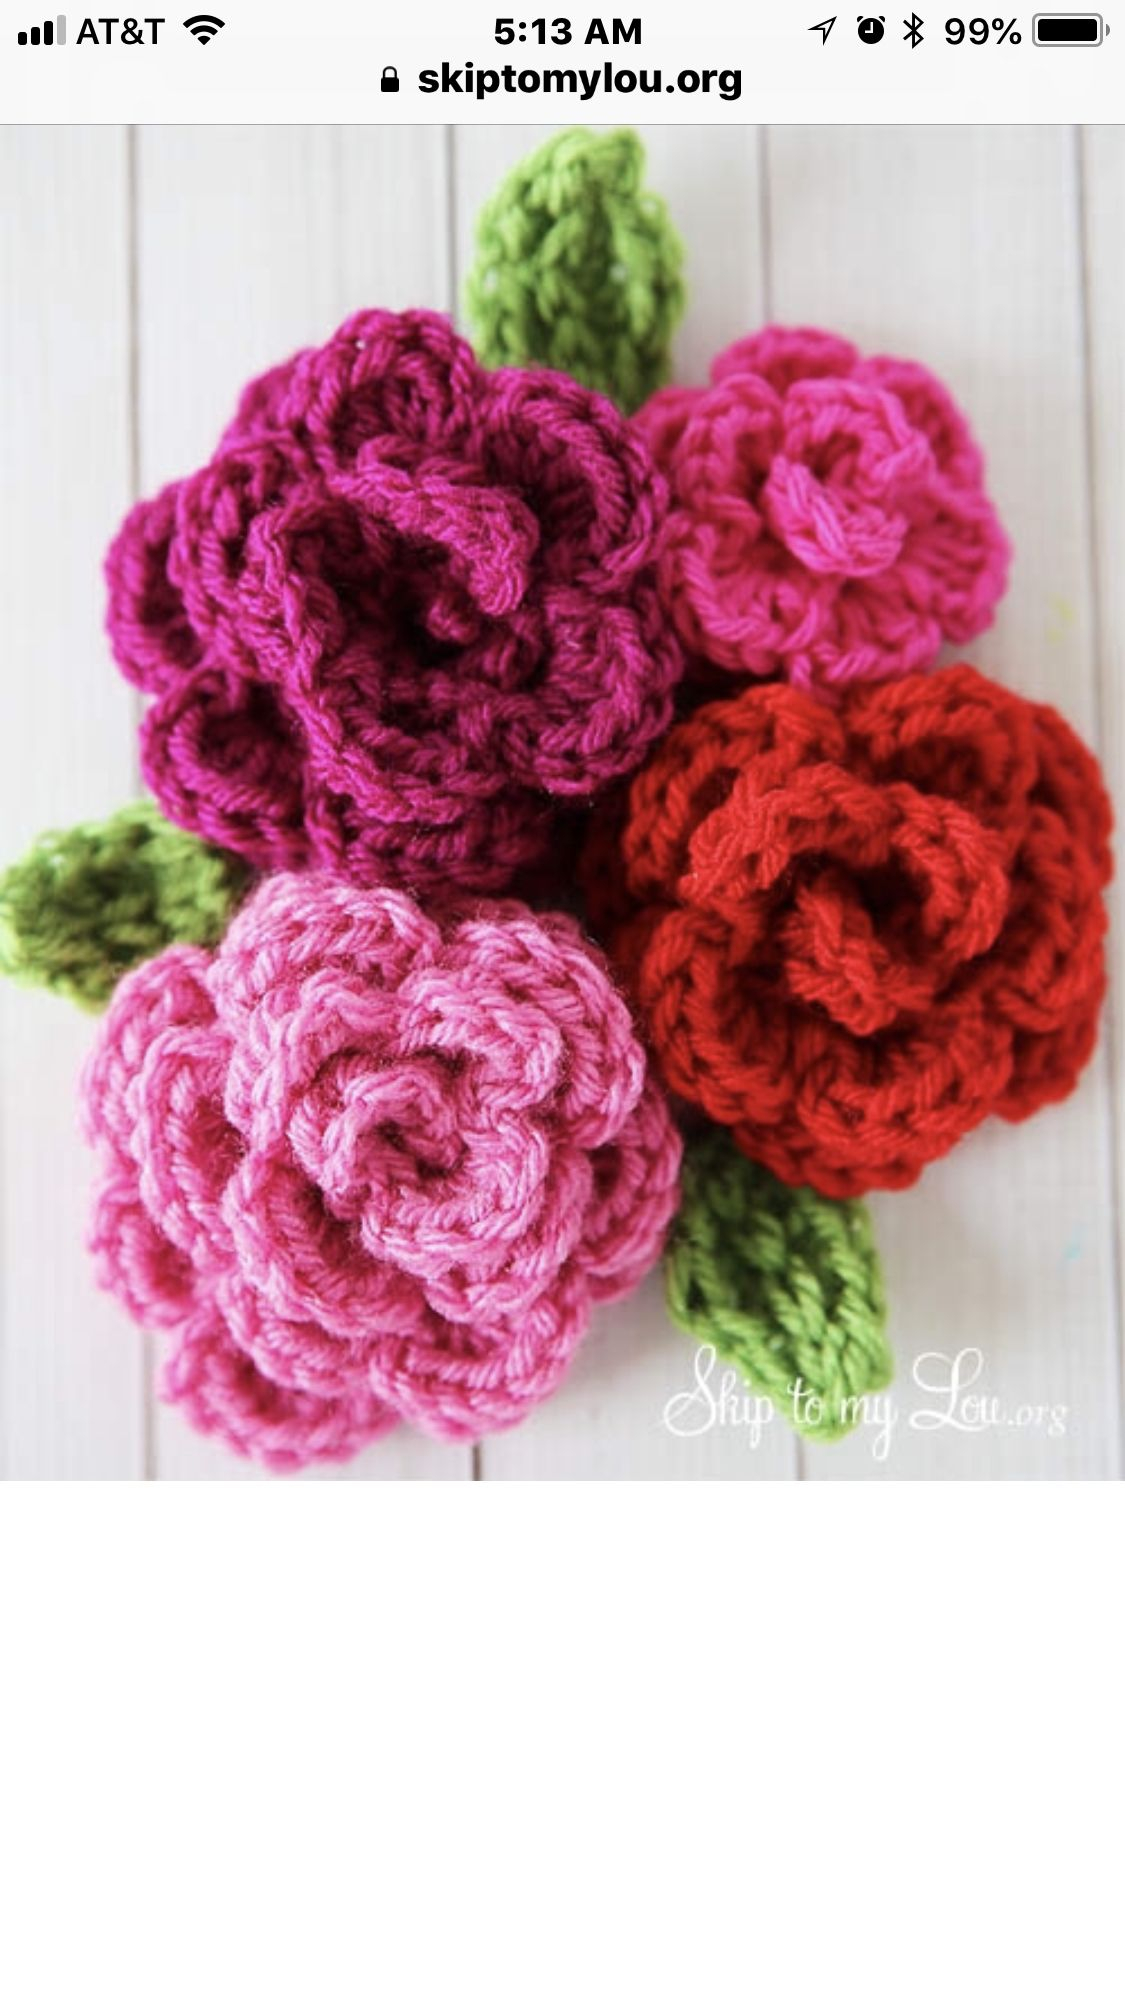 Crochet Flowers Pattern Free Easy Rose Crochet Pattern Grandkid Fun Crochet Patterns